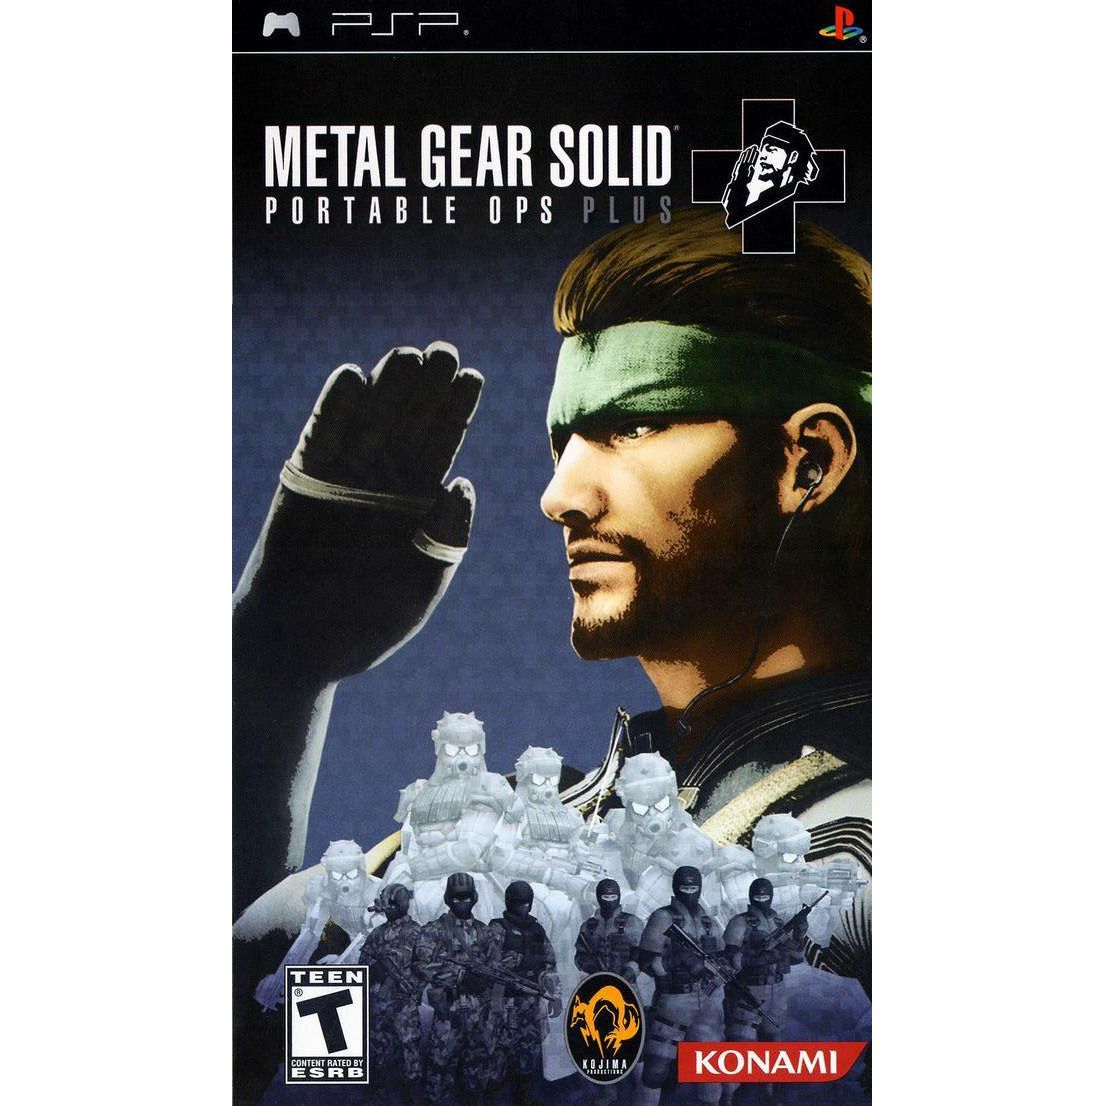 PSP - Metal Gear Solid - Portable Ops Plus (dans son étui)